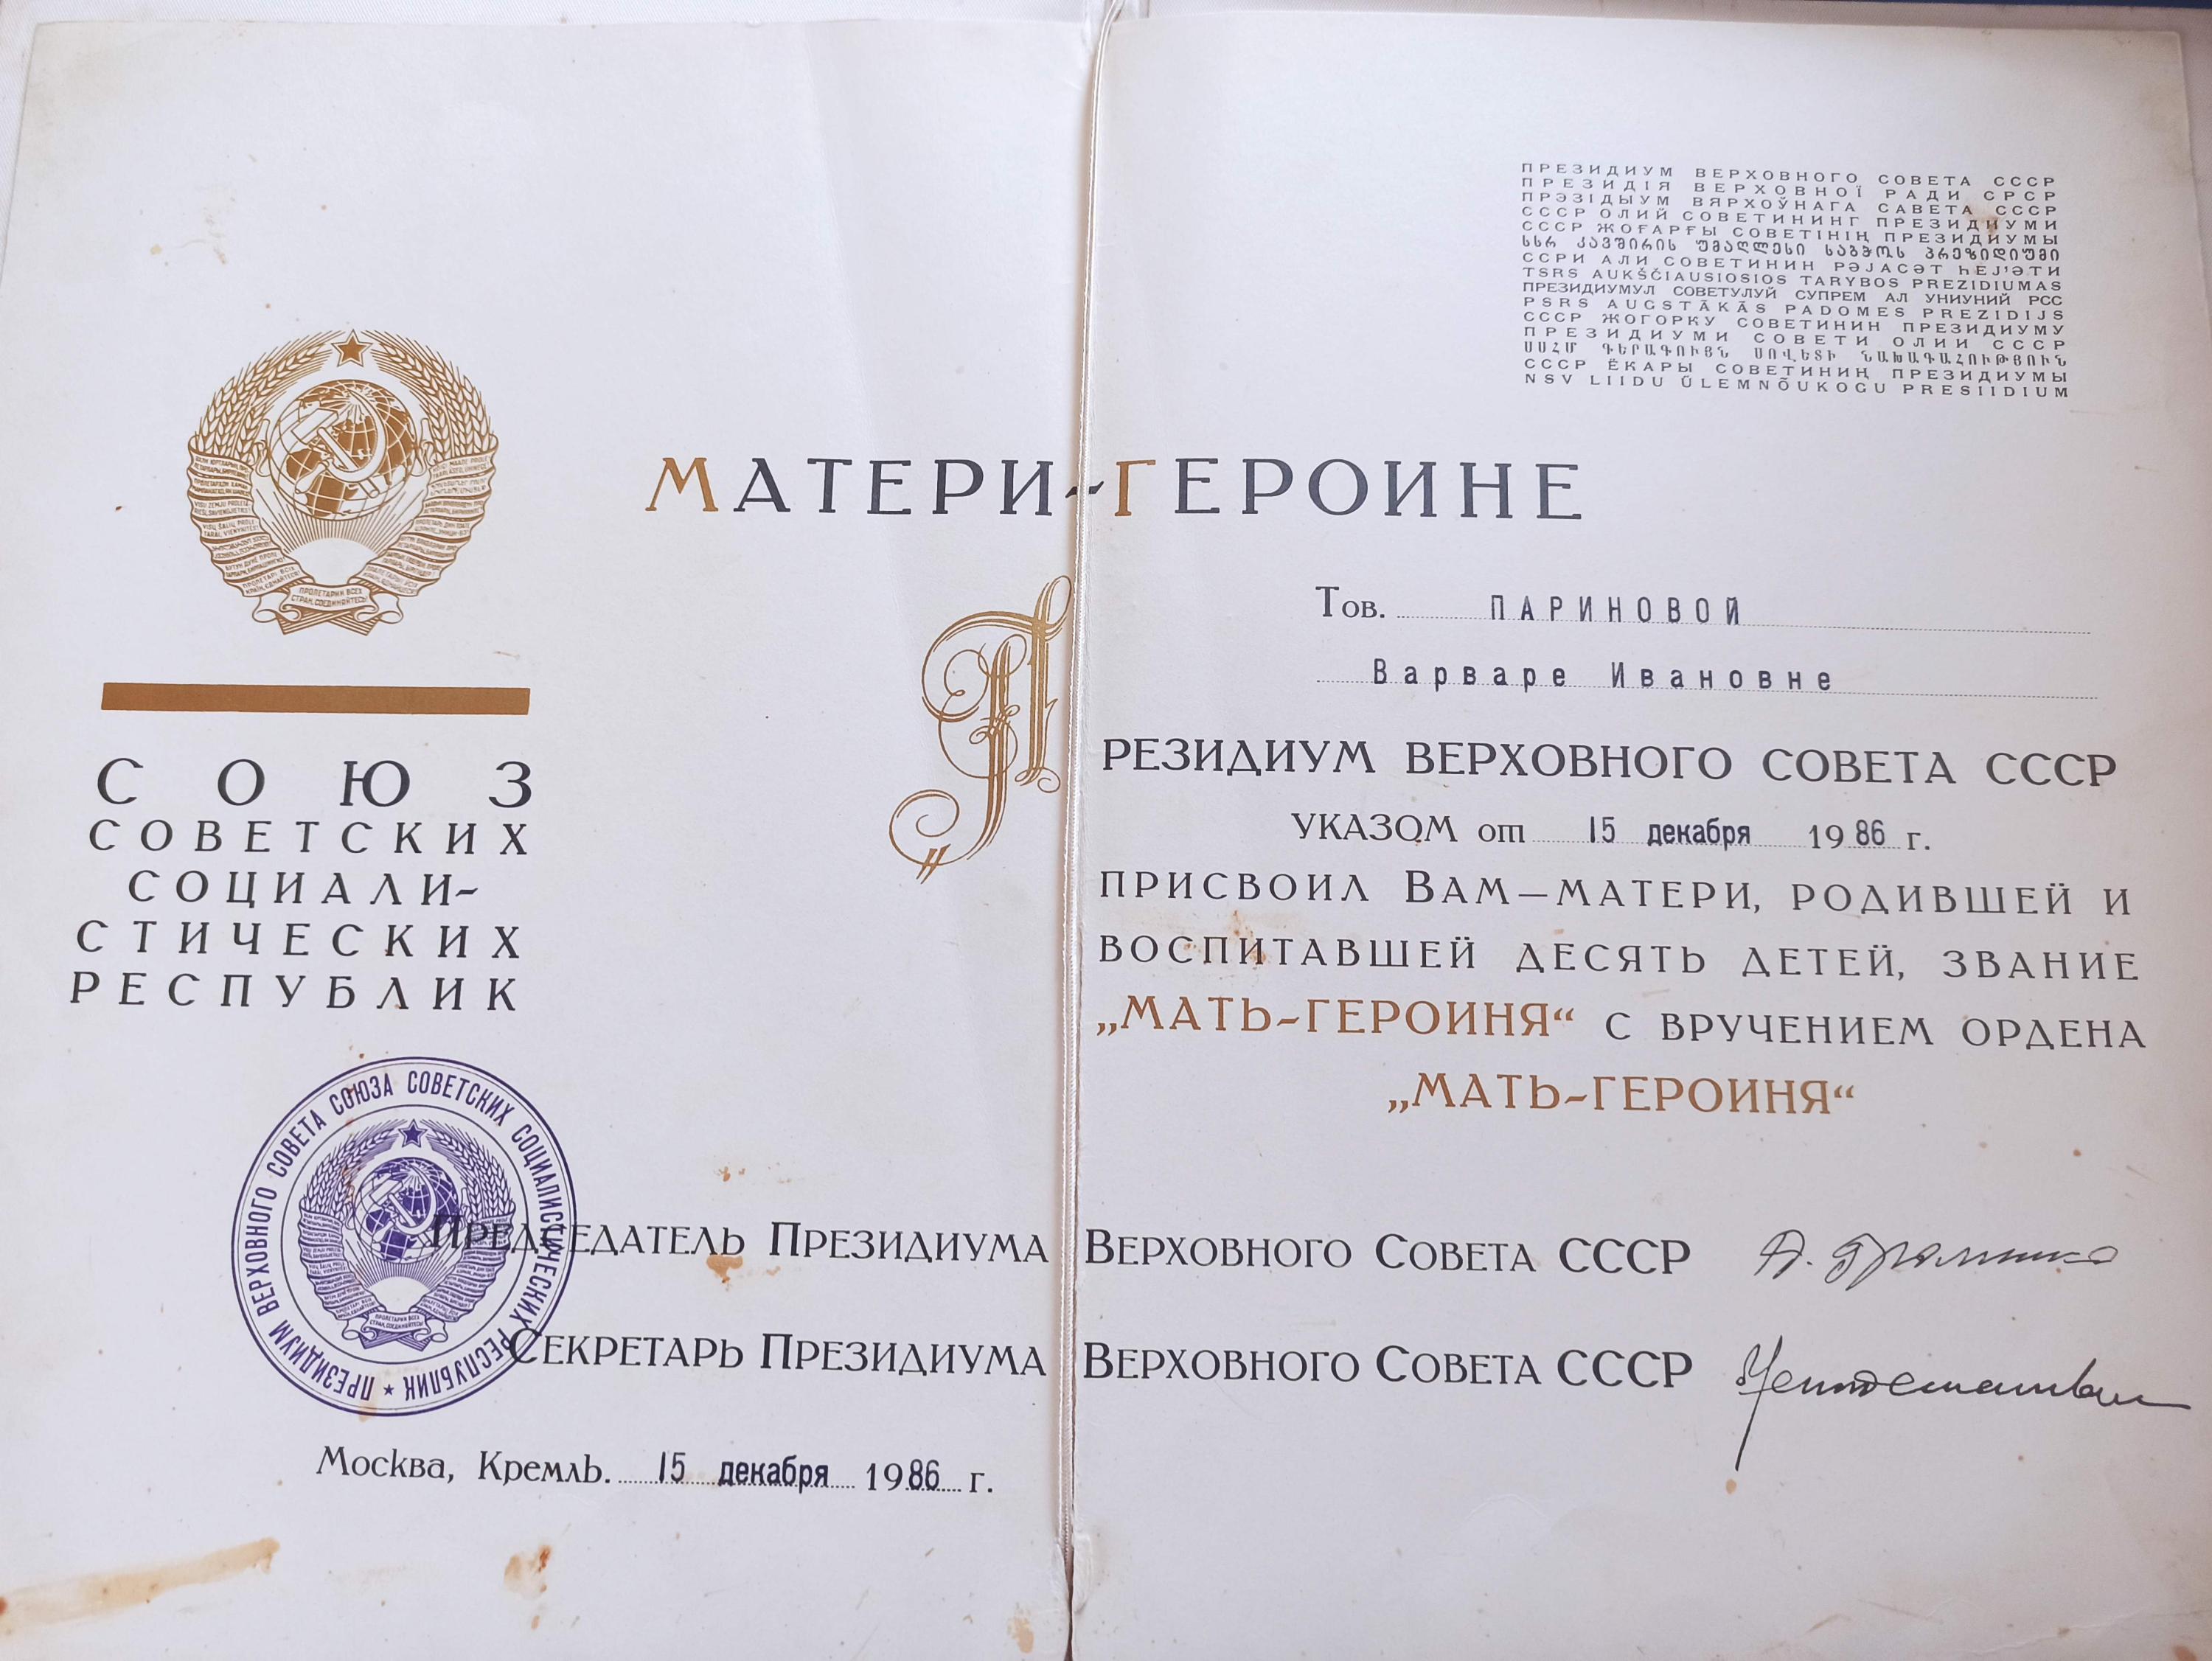 Одиннадцатый ребенок родился в семье Париновых после вручения звания и награды